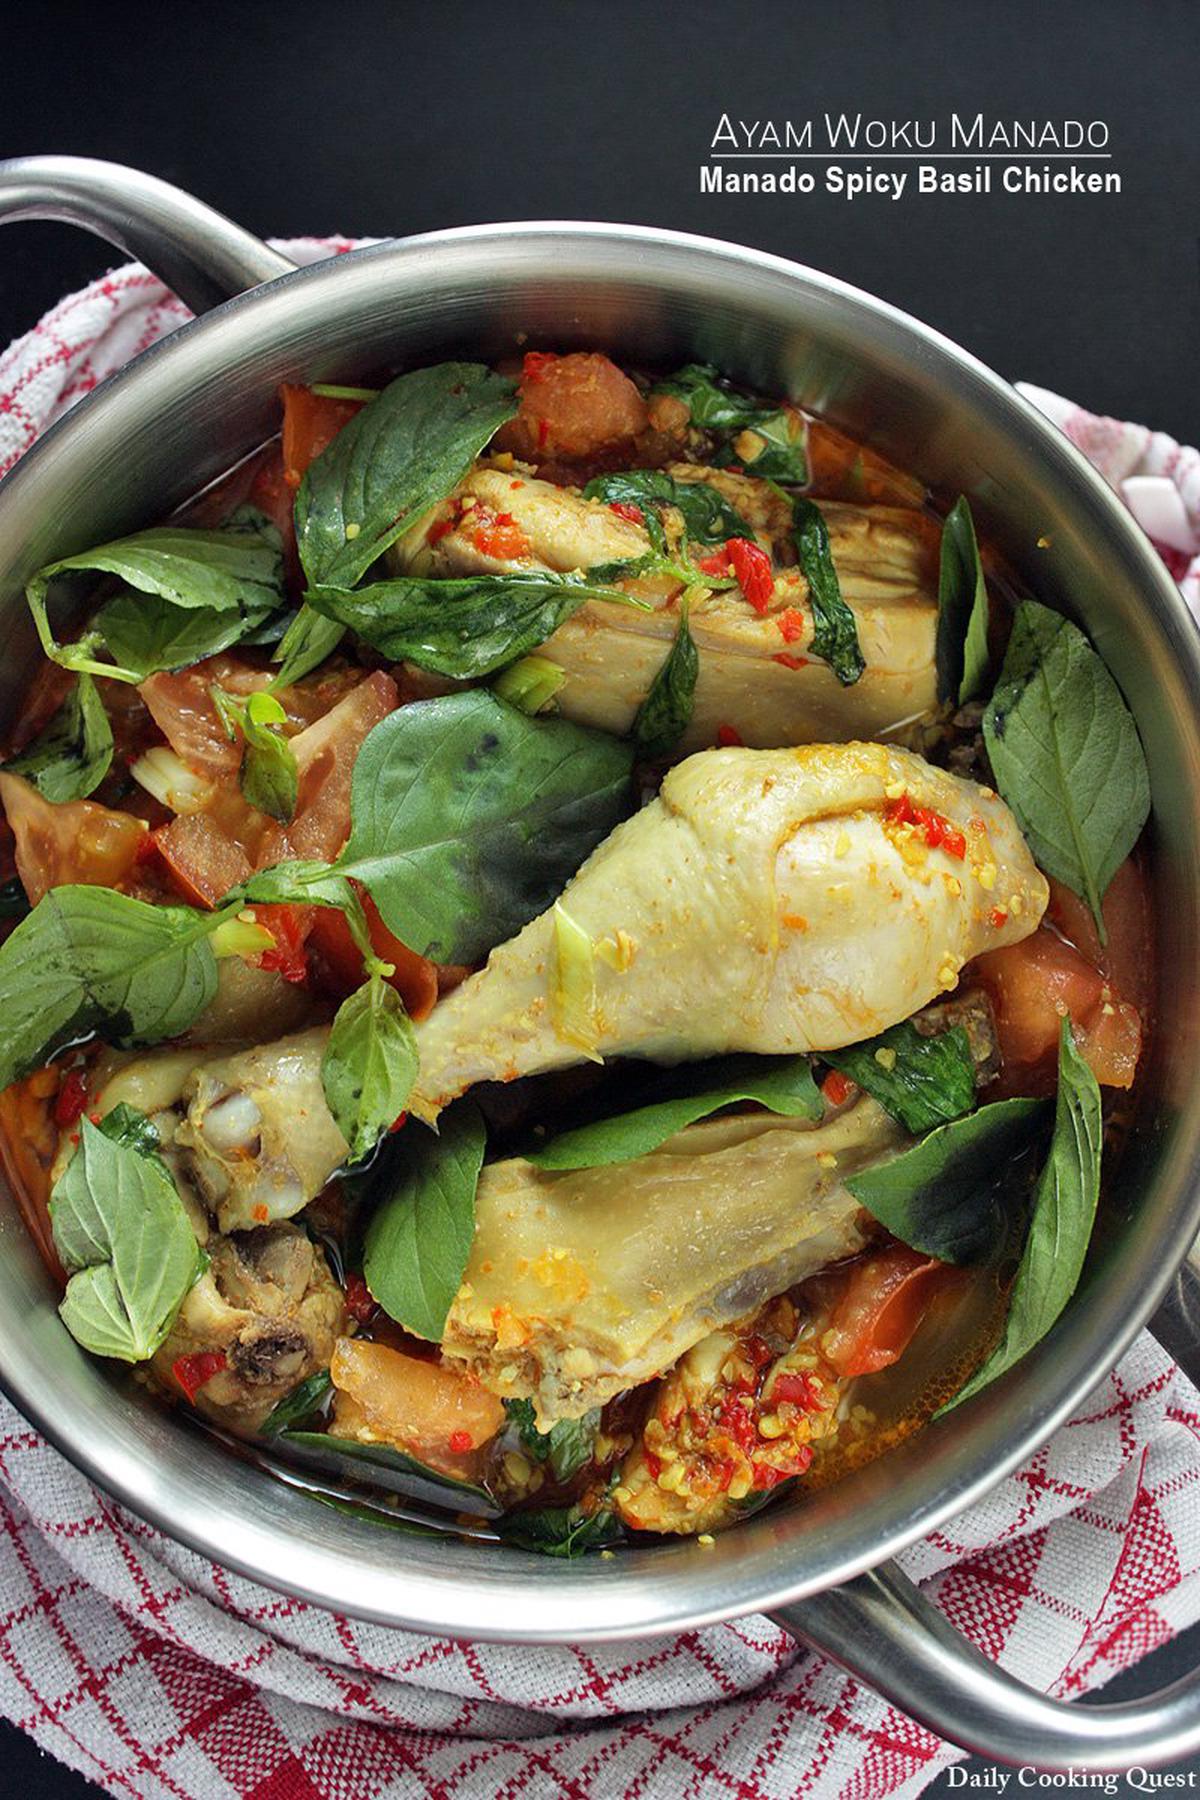 Ayam Woku Manado - Manado Spicy Basil Chicken